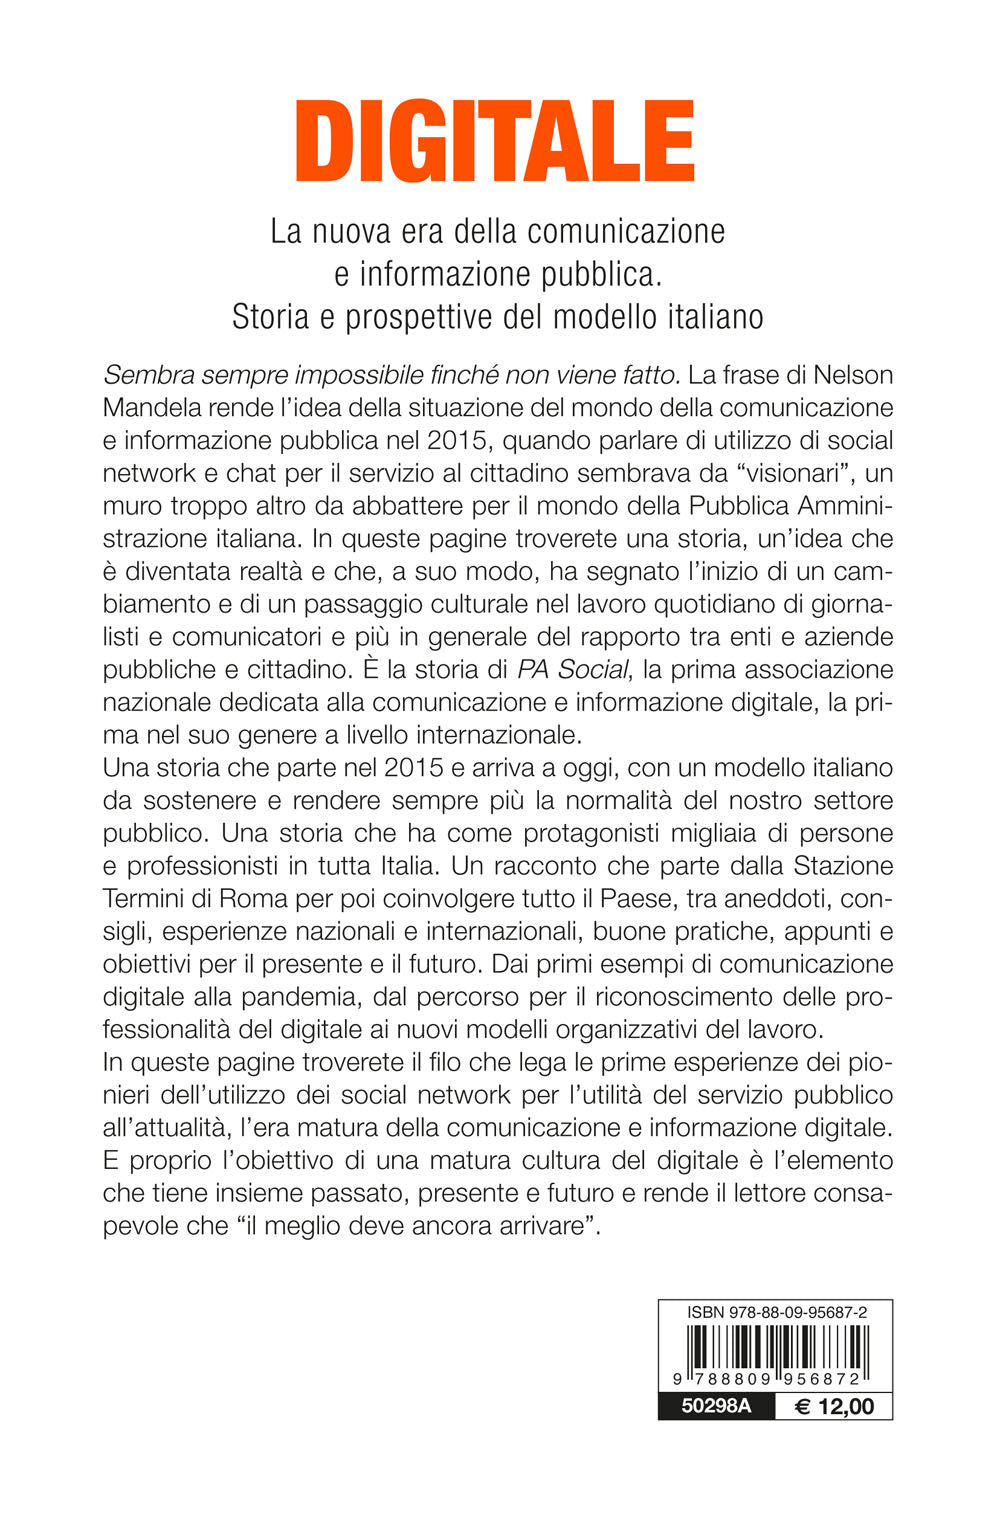 Digitale::La nuova era della comunicazione e informazione pubblica. Storia e prospettive del modello italiano